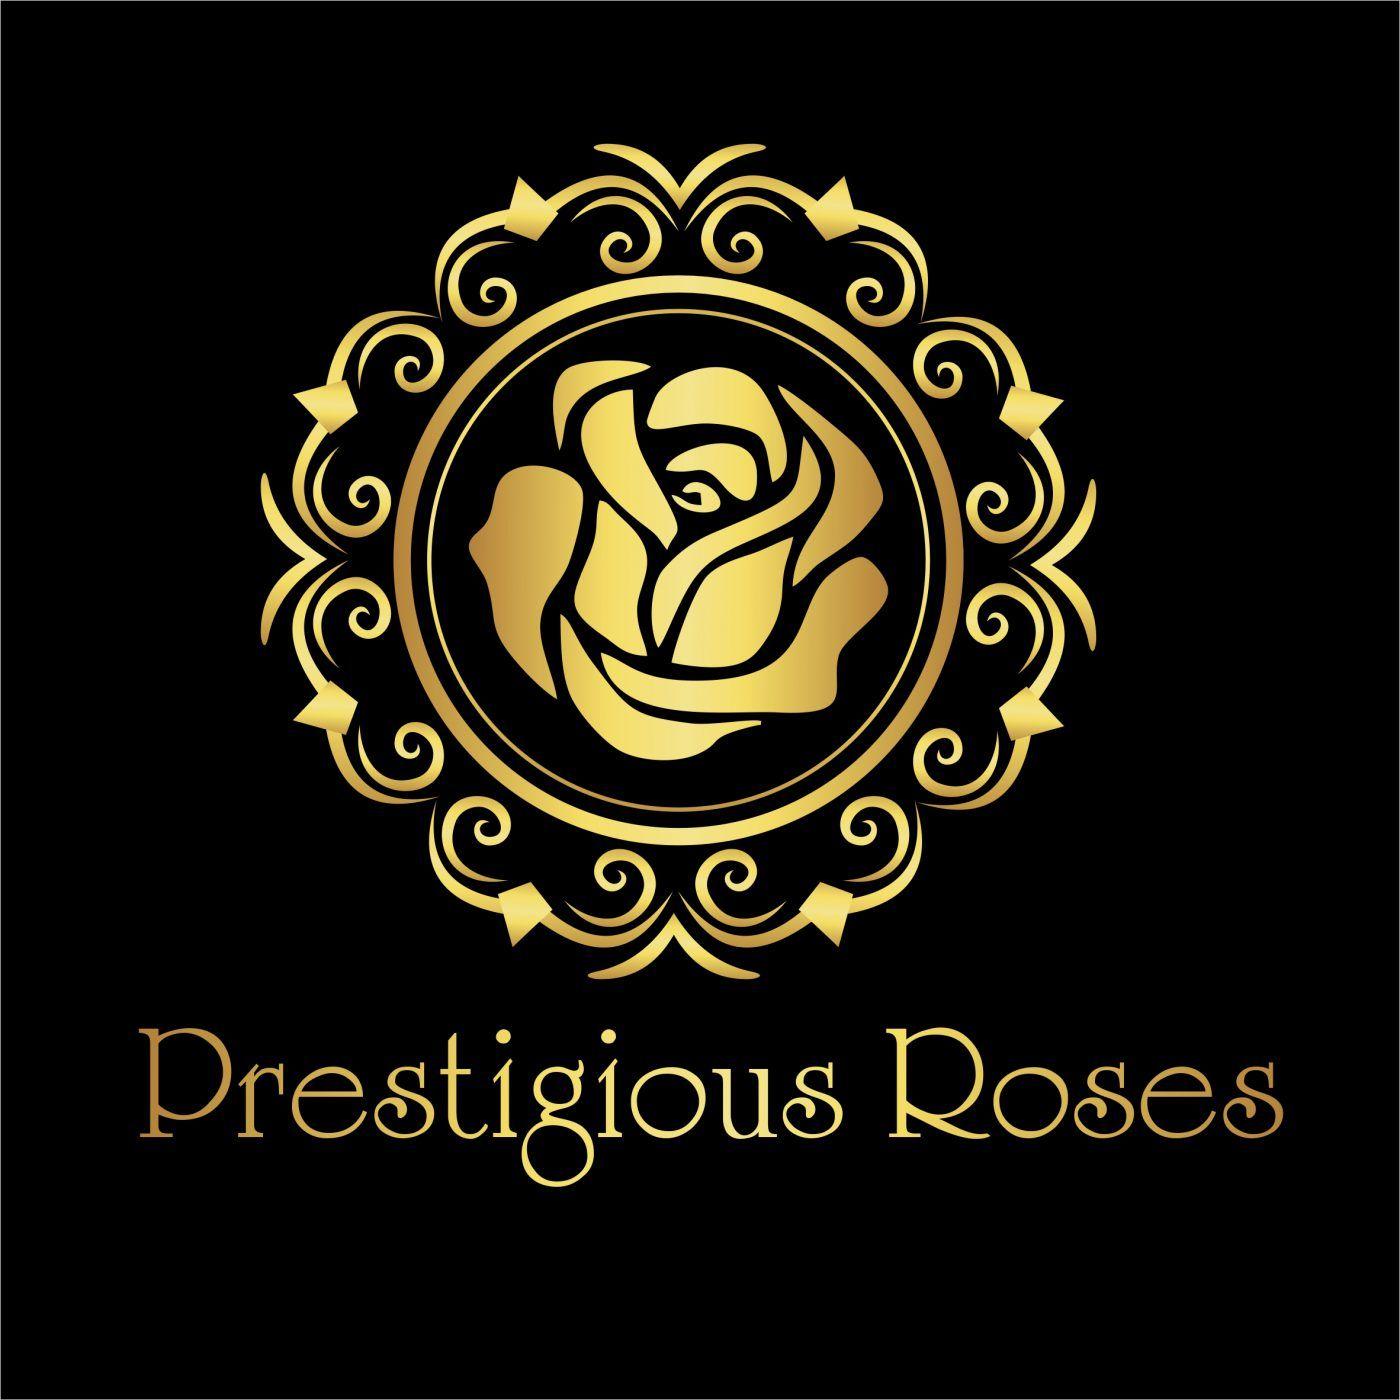 Gold Rose Logo - Golden Rose Arrangement